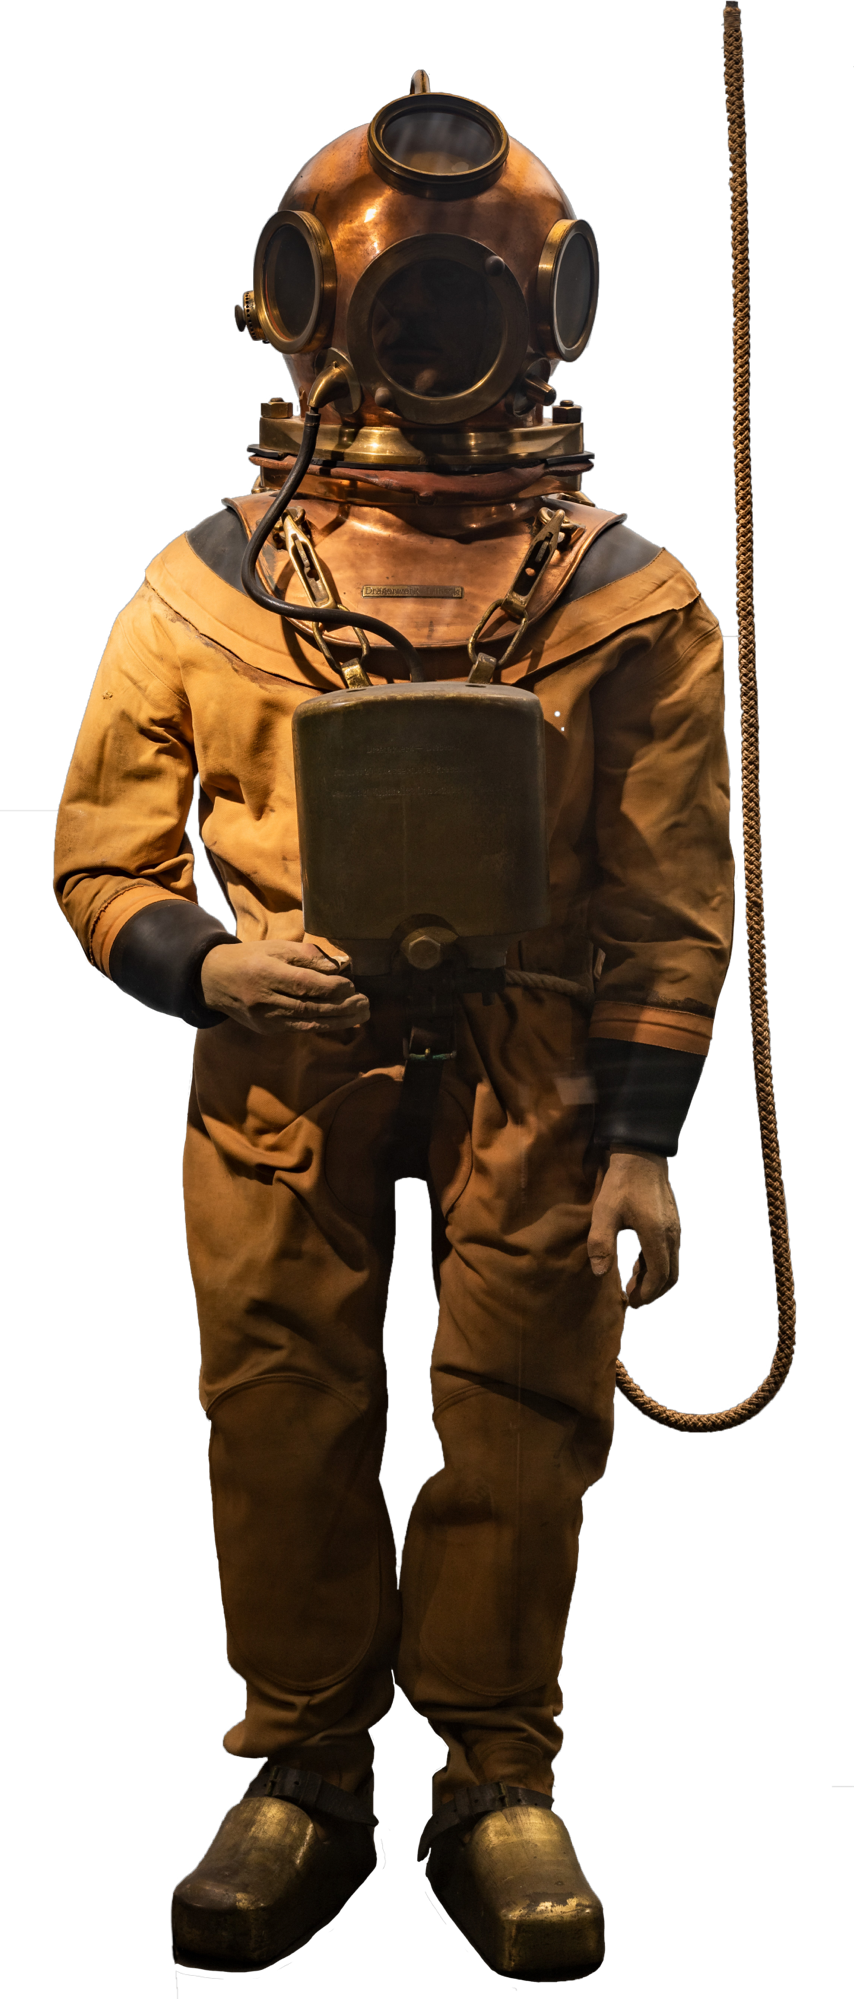 Ein Tauchgerät von 1925, Atemluft wird über einen Schlauch direkt in den Helm gepumpt ist in der Meeresforschung ausgestellt.